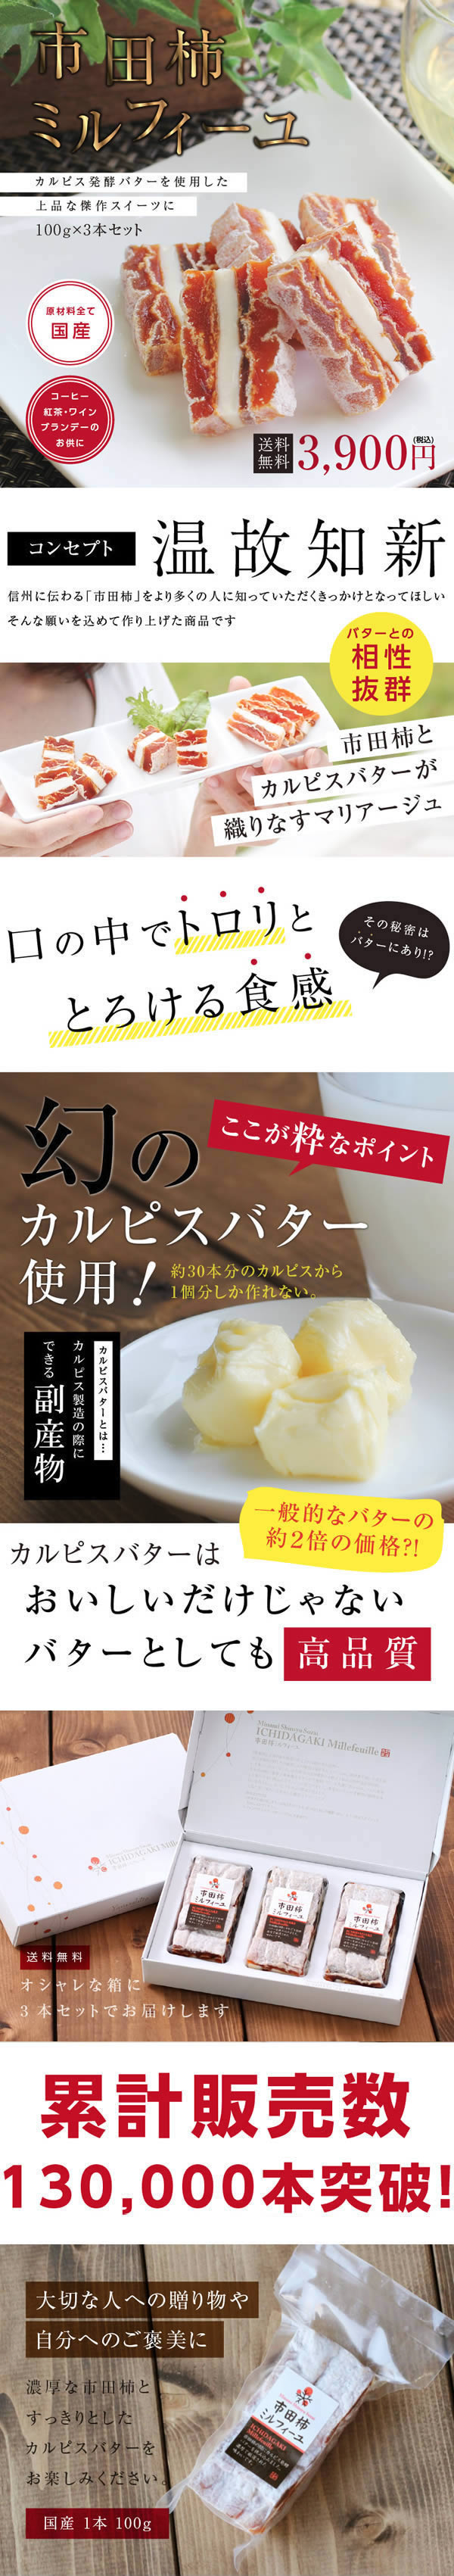 市田柿ミルフィーユ カルピス発酵バター